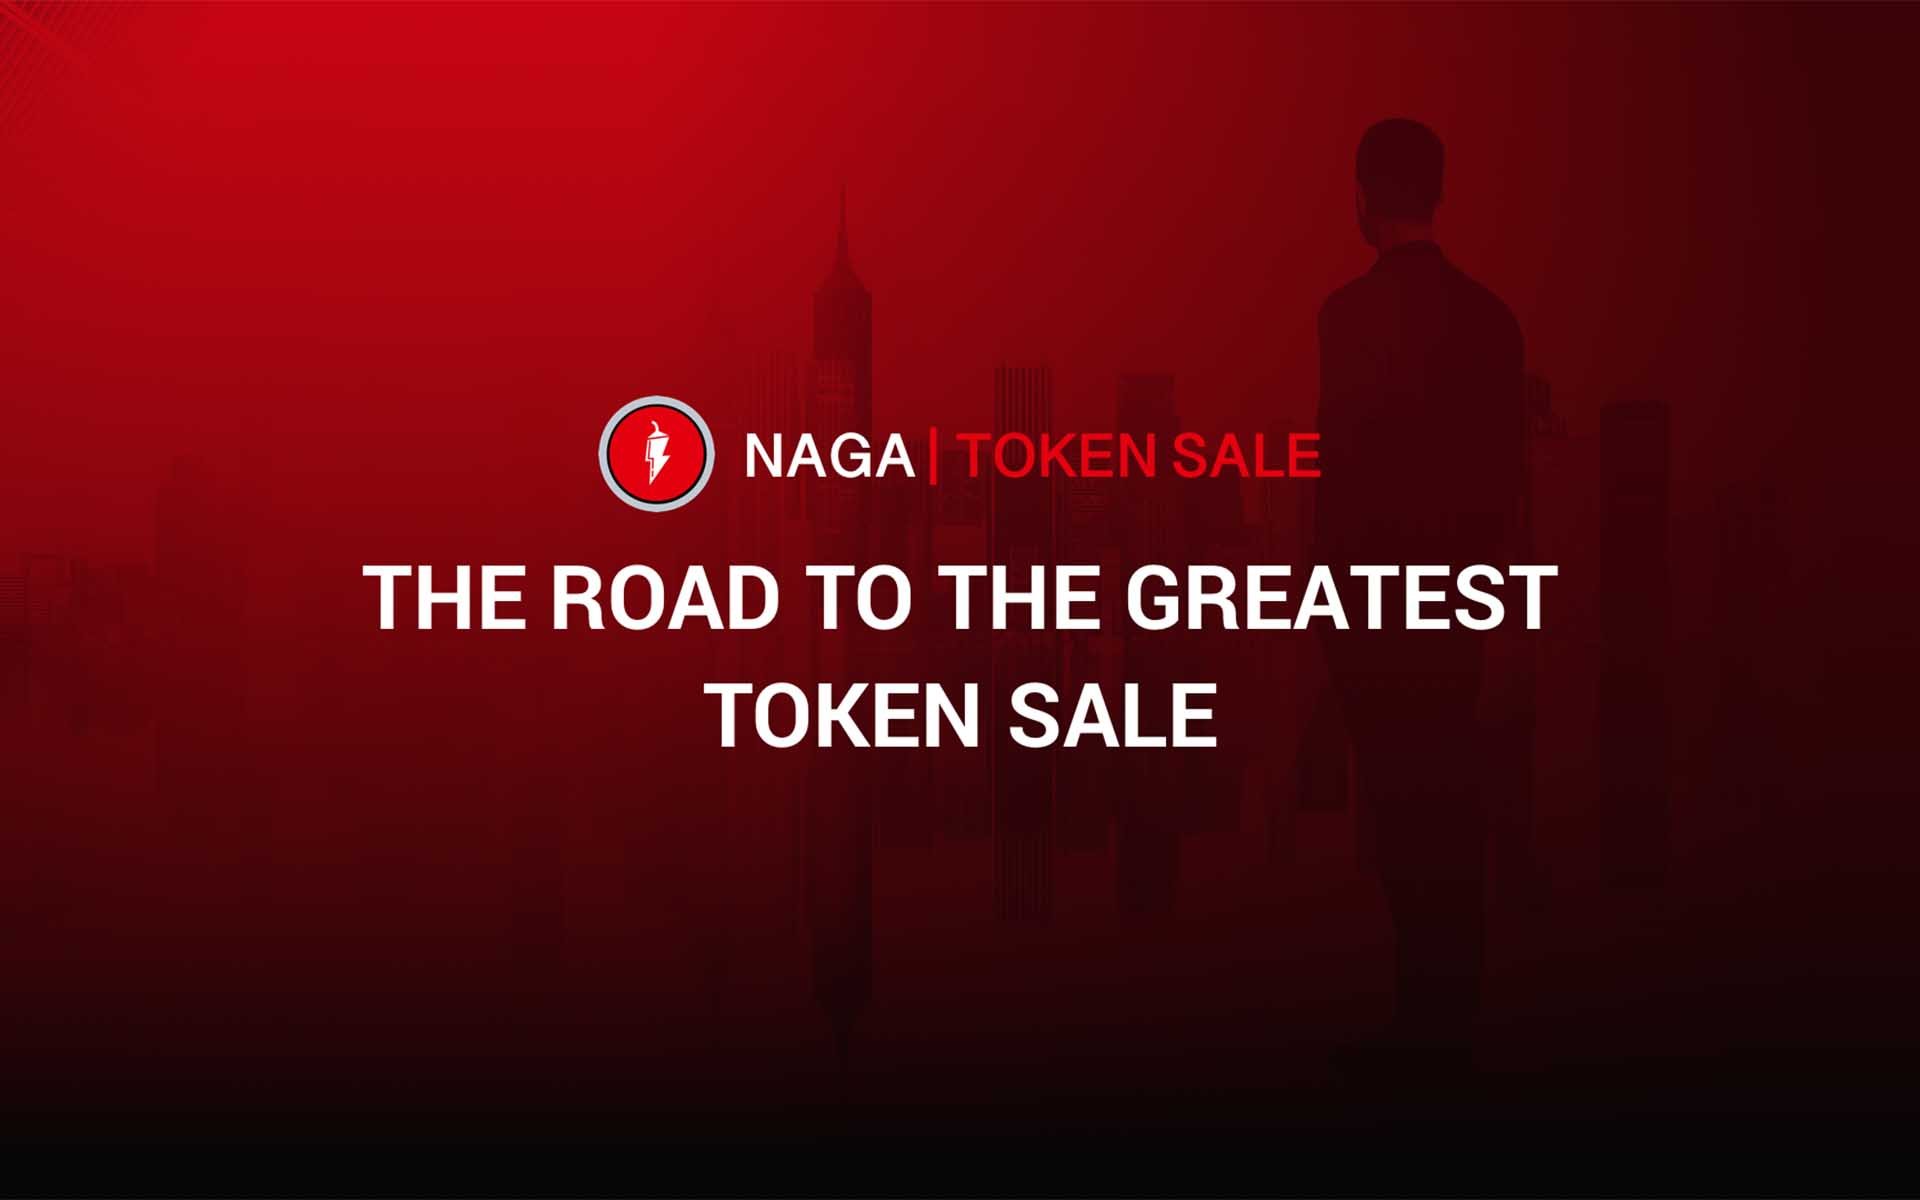 Bitcoin’s Roger Ver and Mate Tokay Join NAGA Board of Advisors